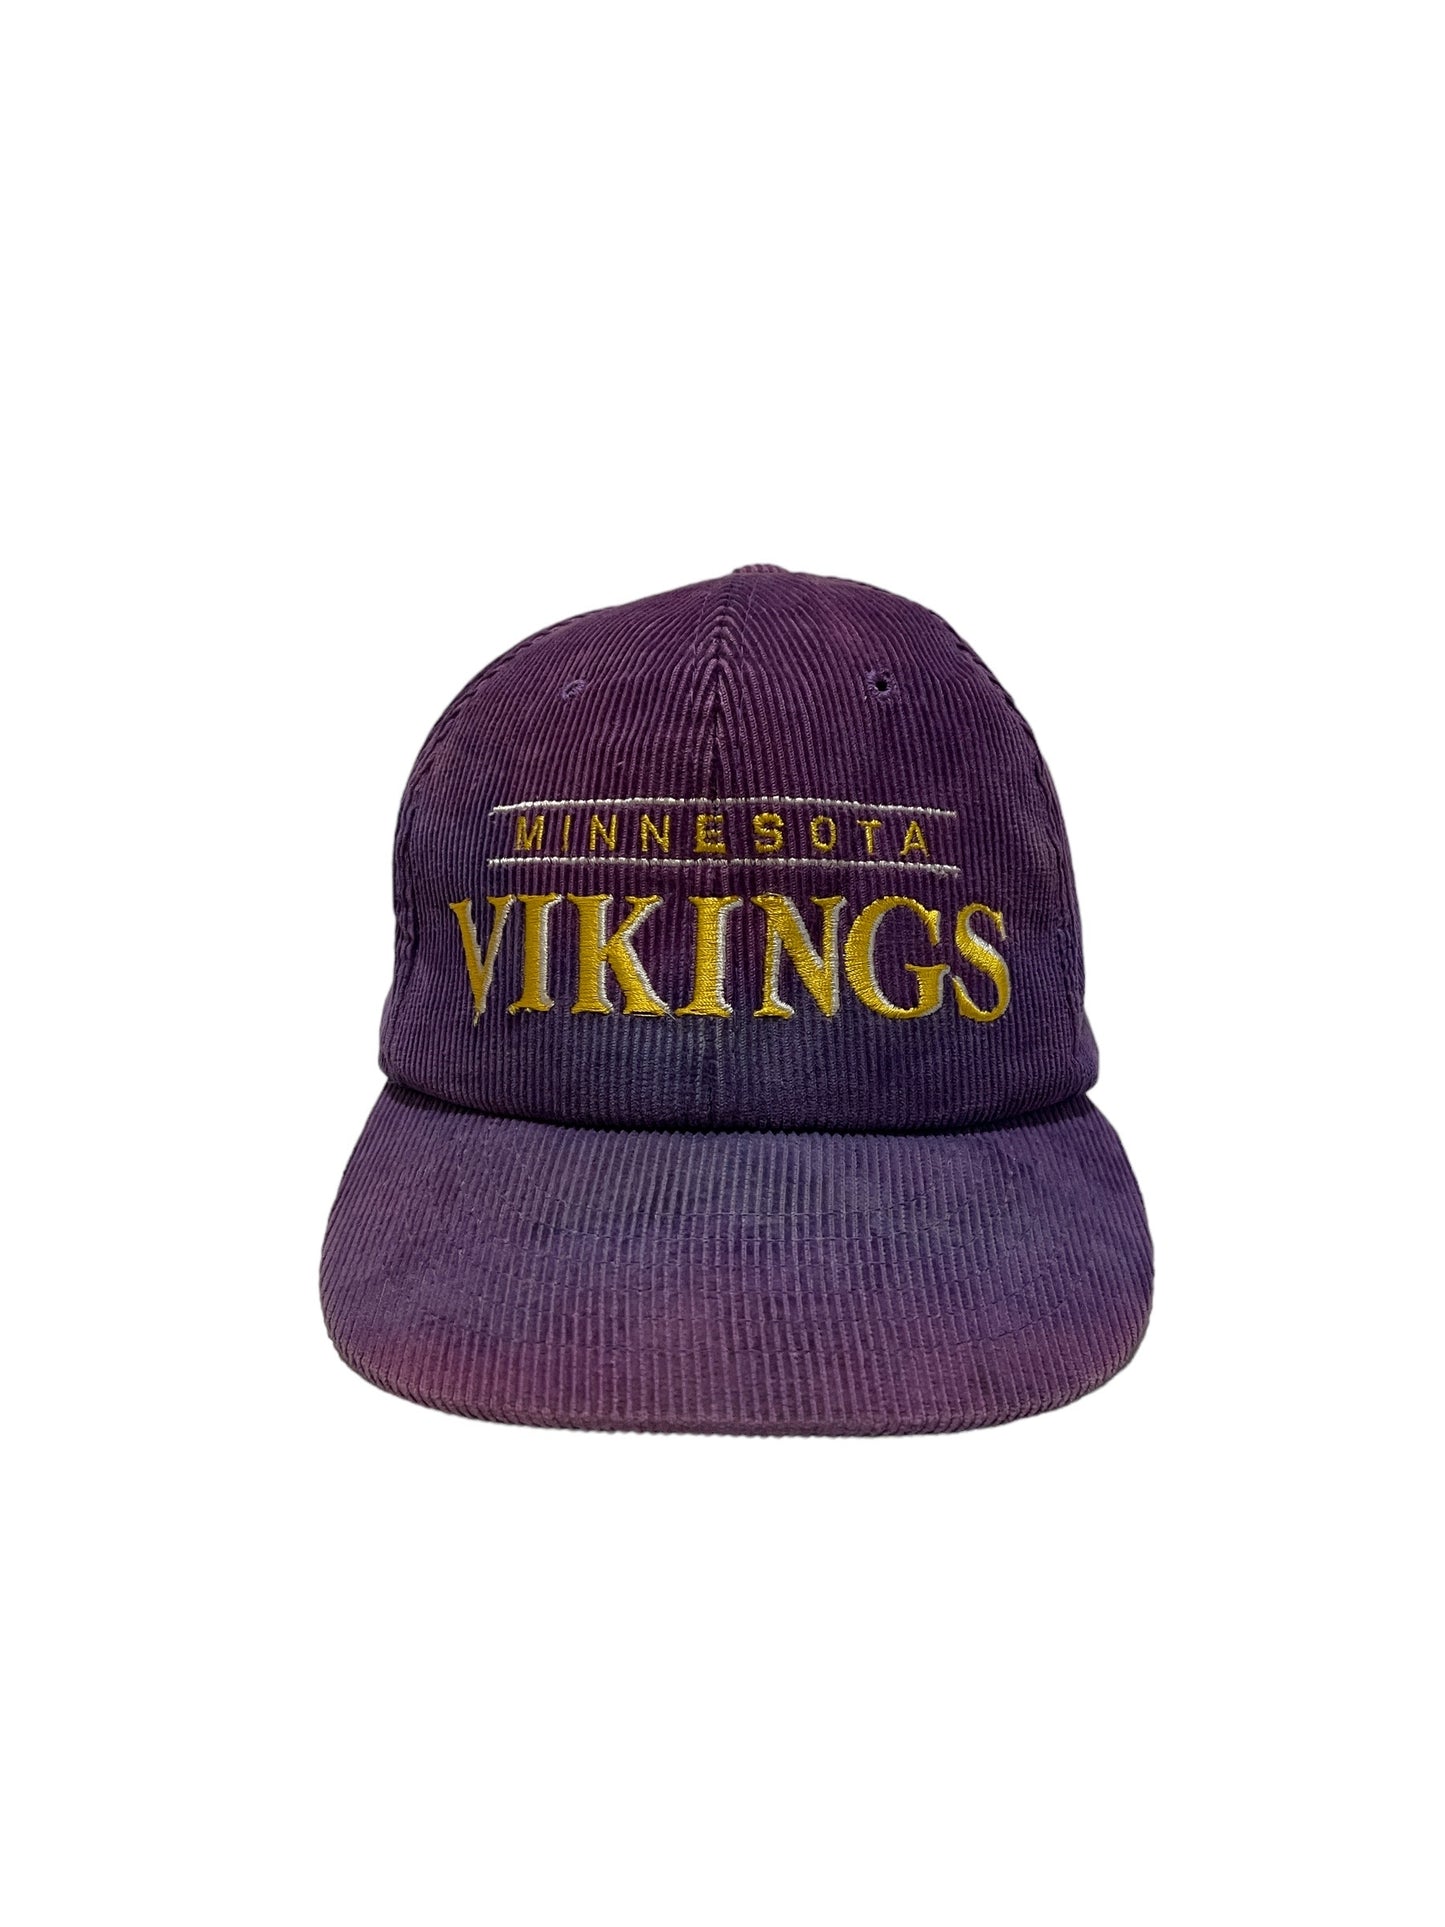 Vintage Corduroy Minnesota Vikings Snapback